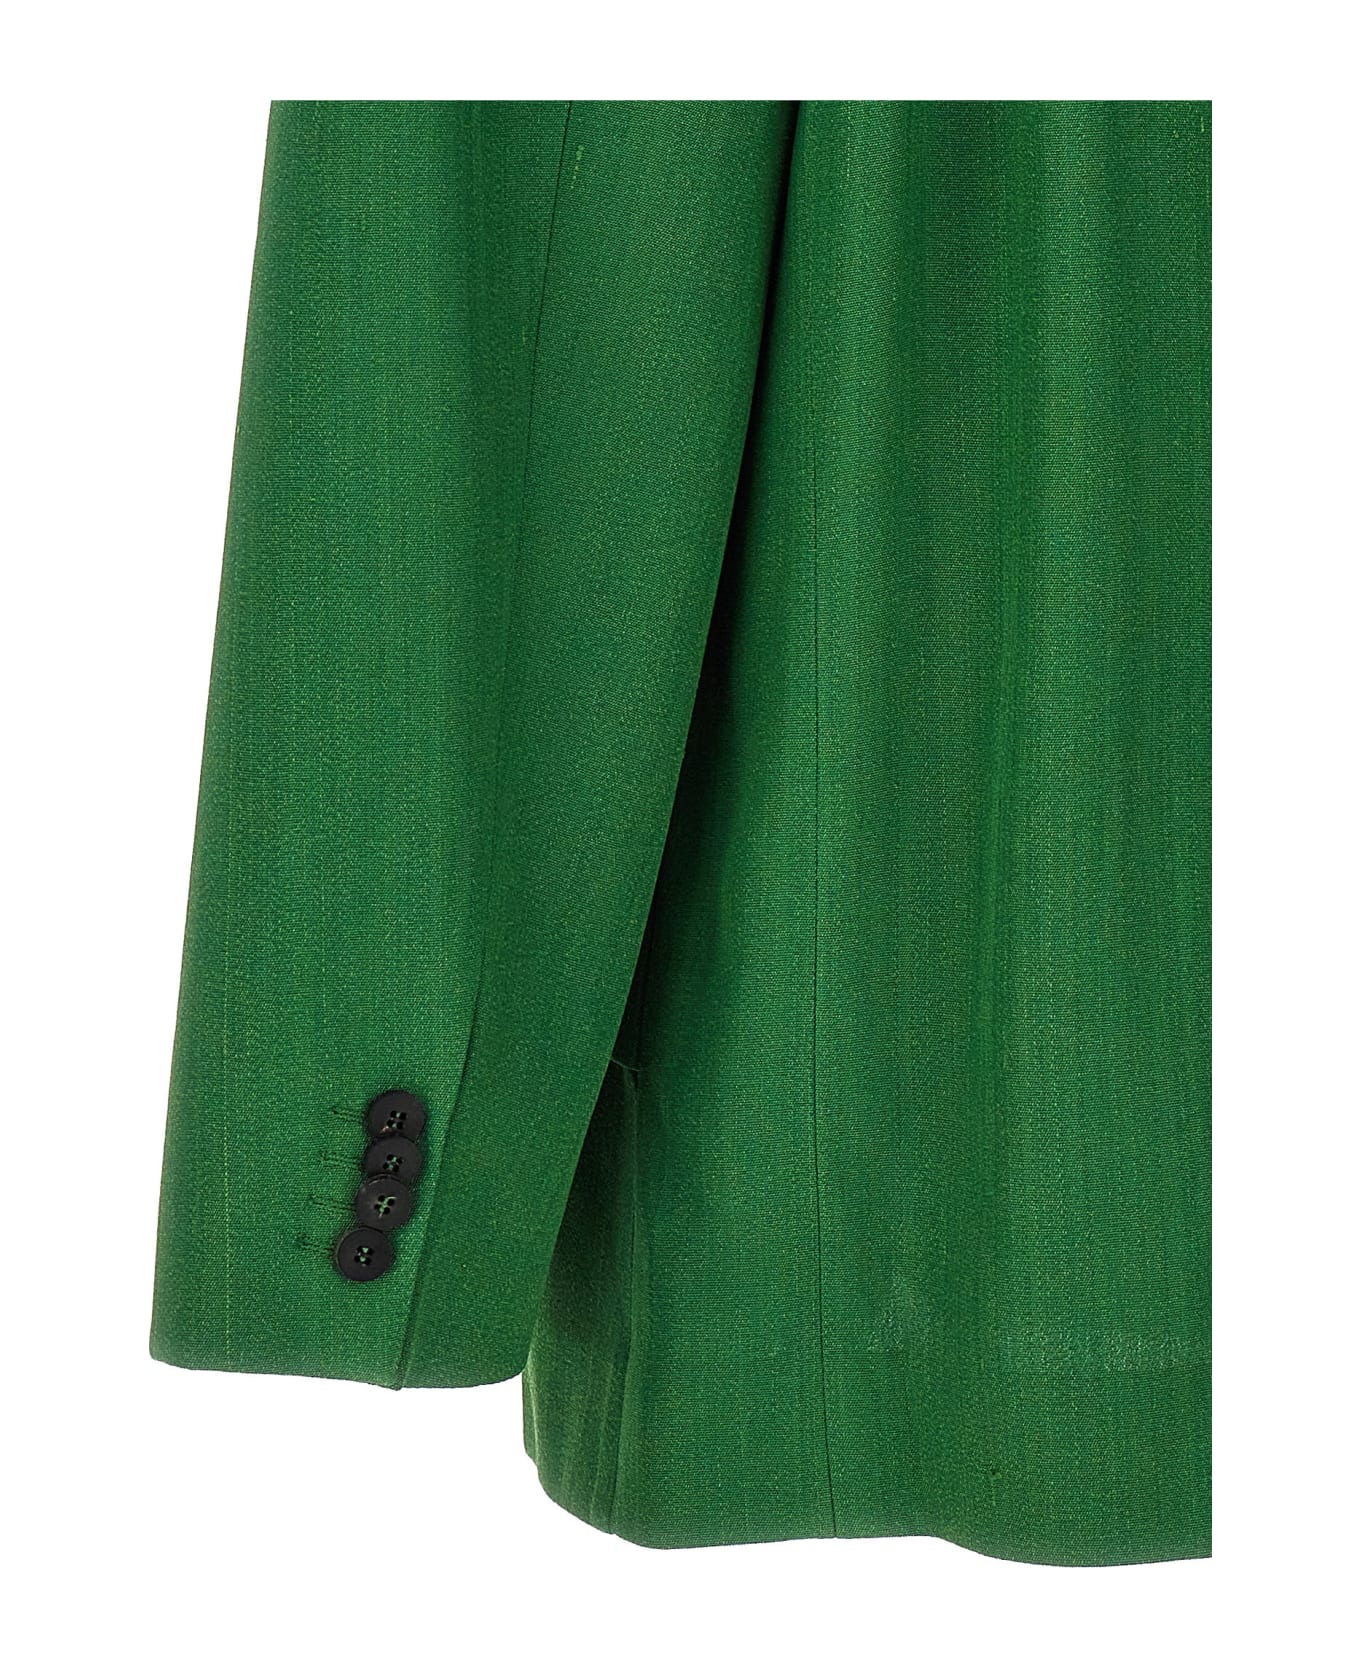 Jacquemus 'la Veste Titolo' Blazer - Green ブレザー